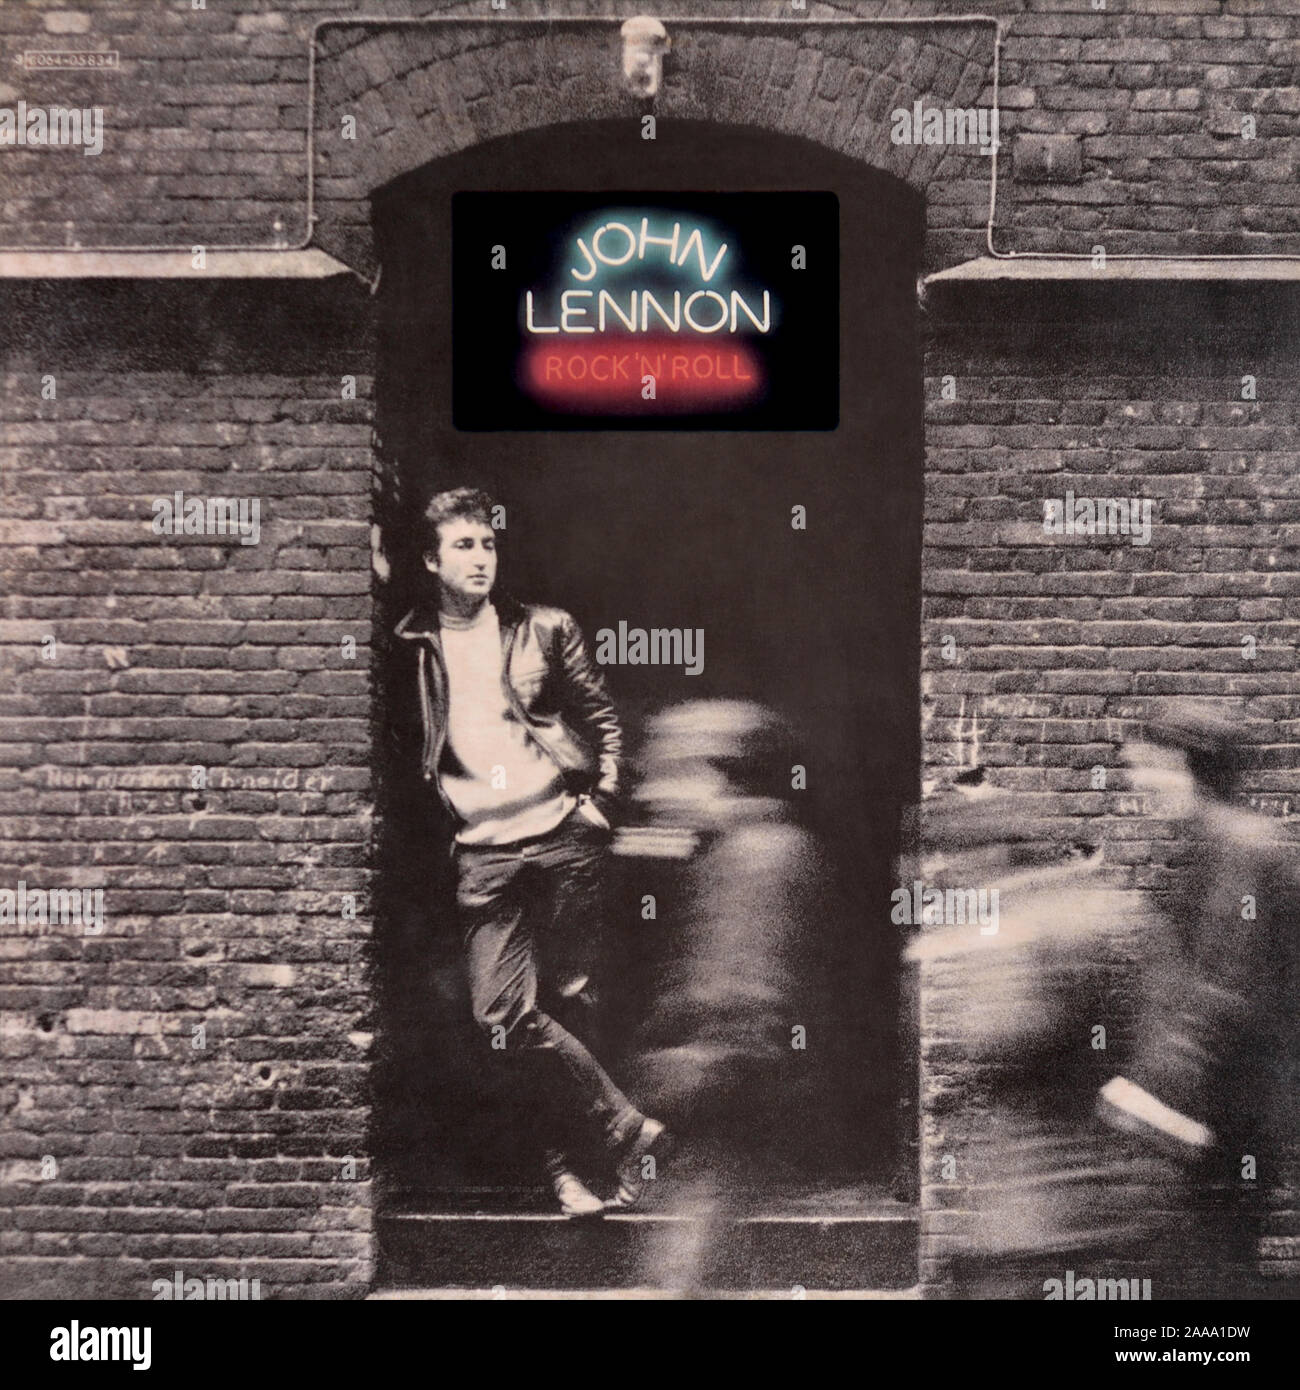 John Lennon - original vinyl album cover - Rock 'N' Roll - 1975 Stock Photo